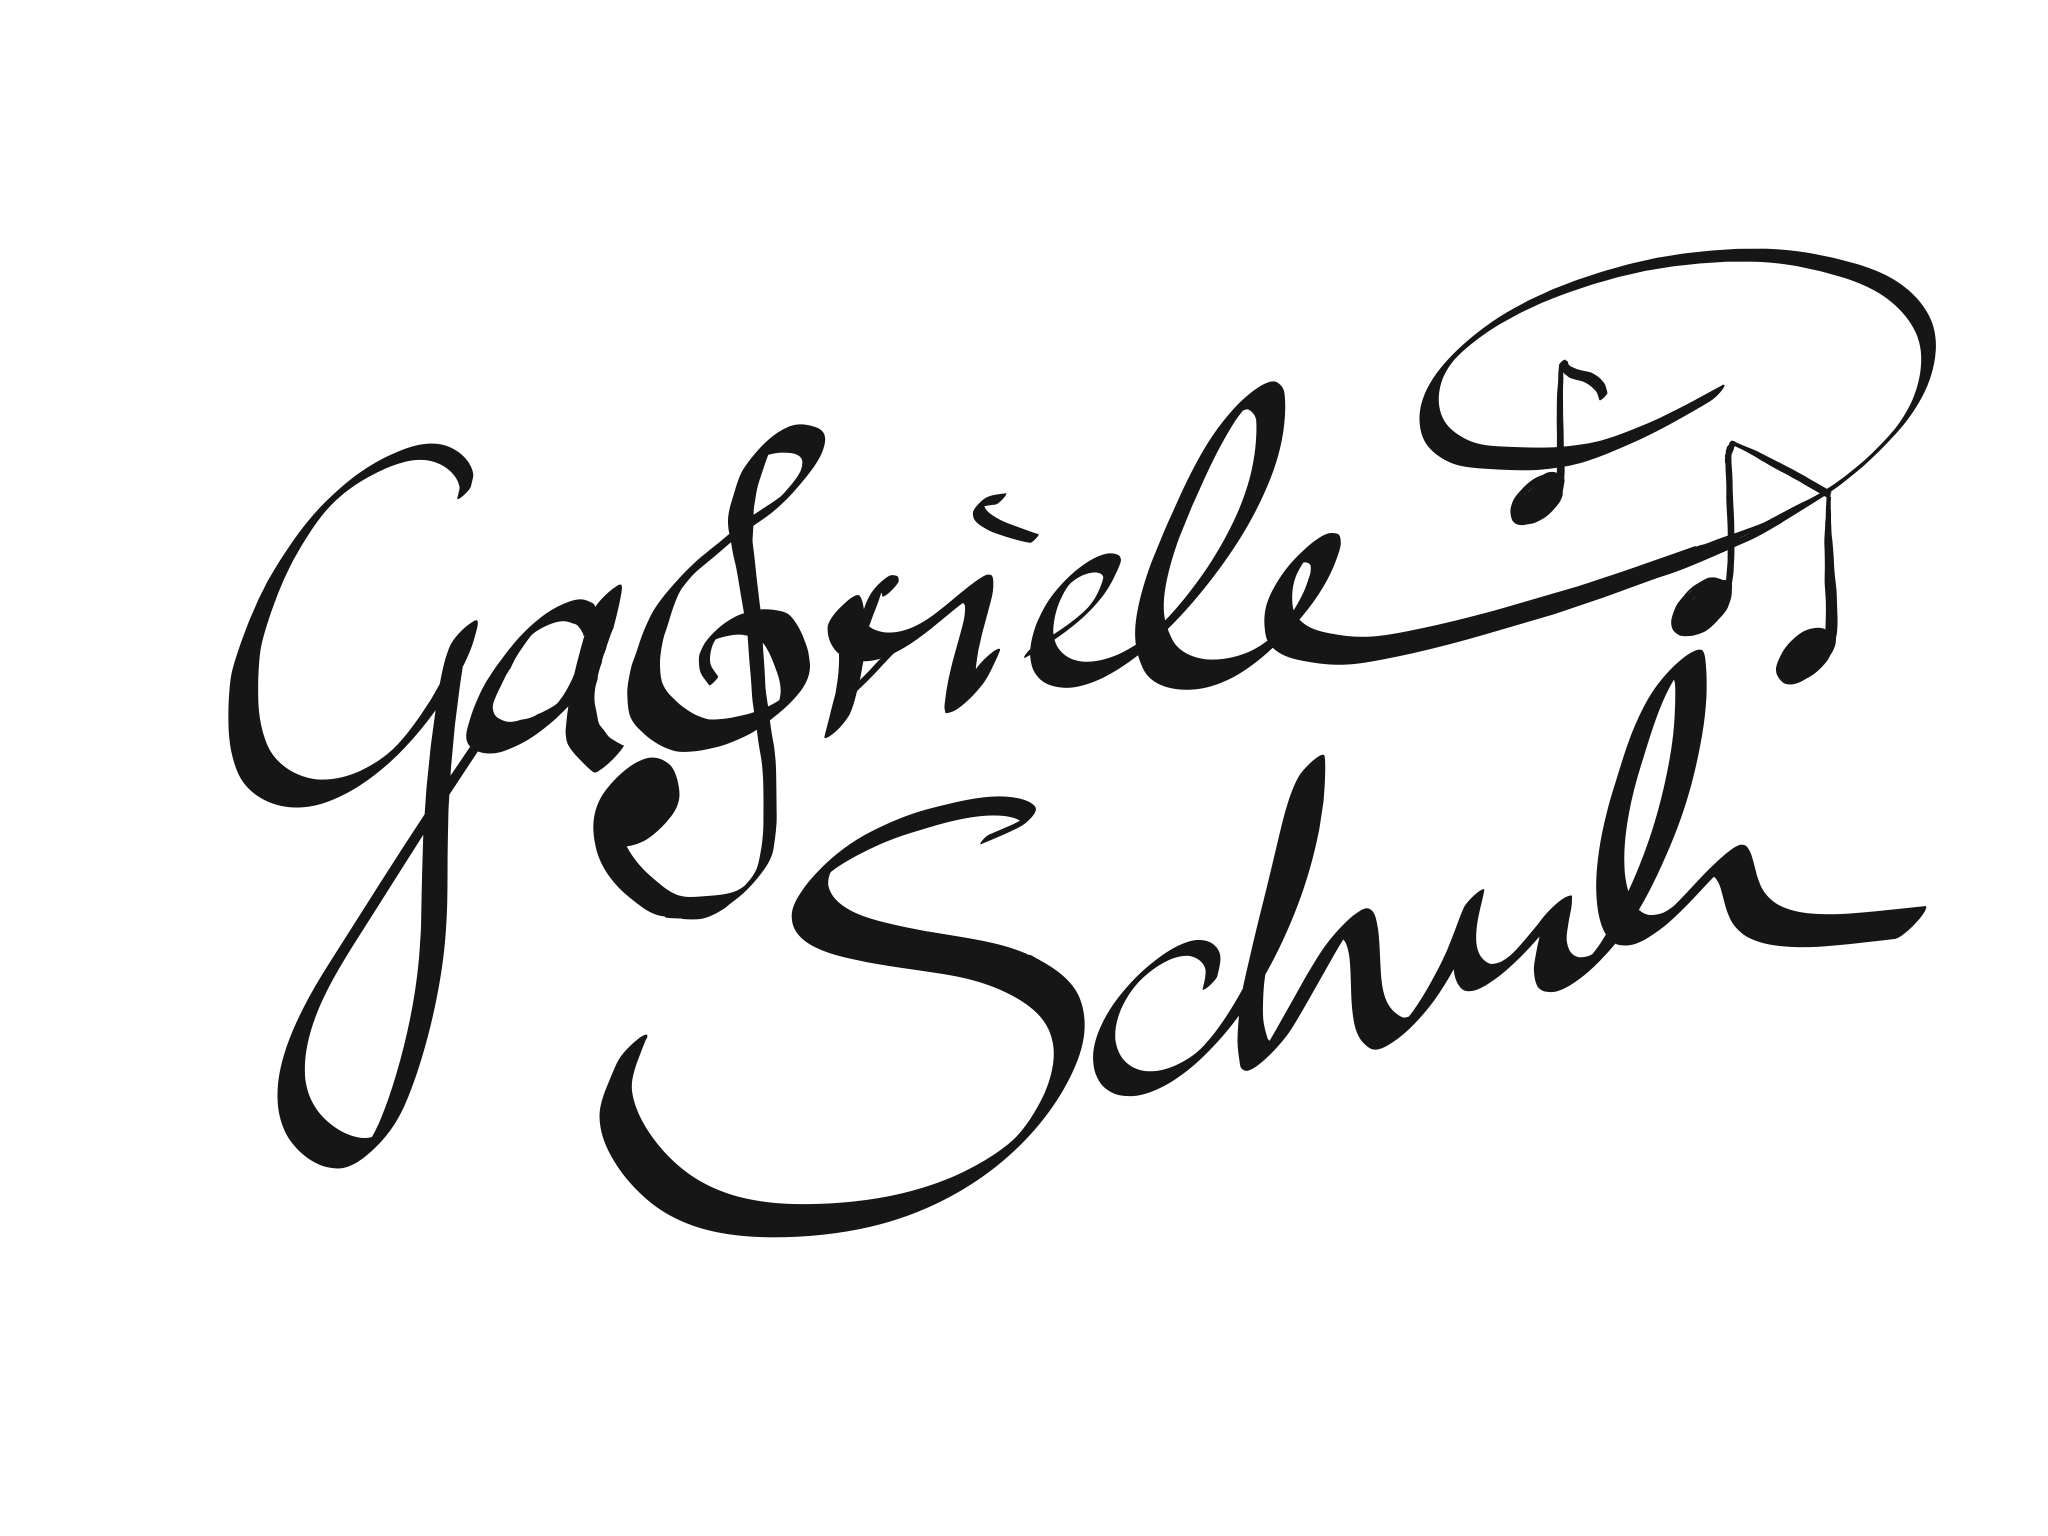 Gabriele Schuh